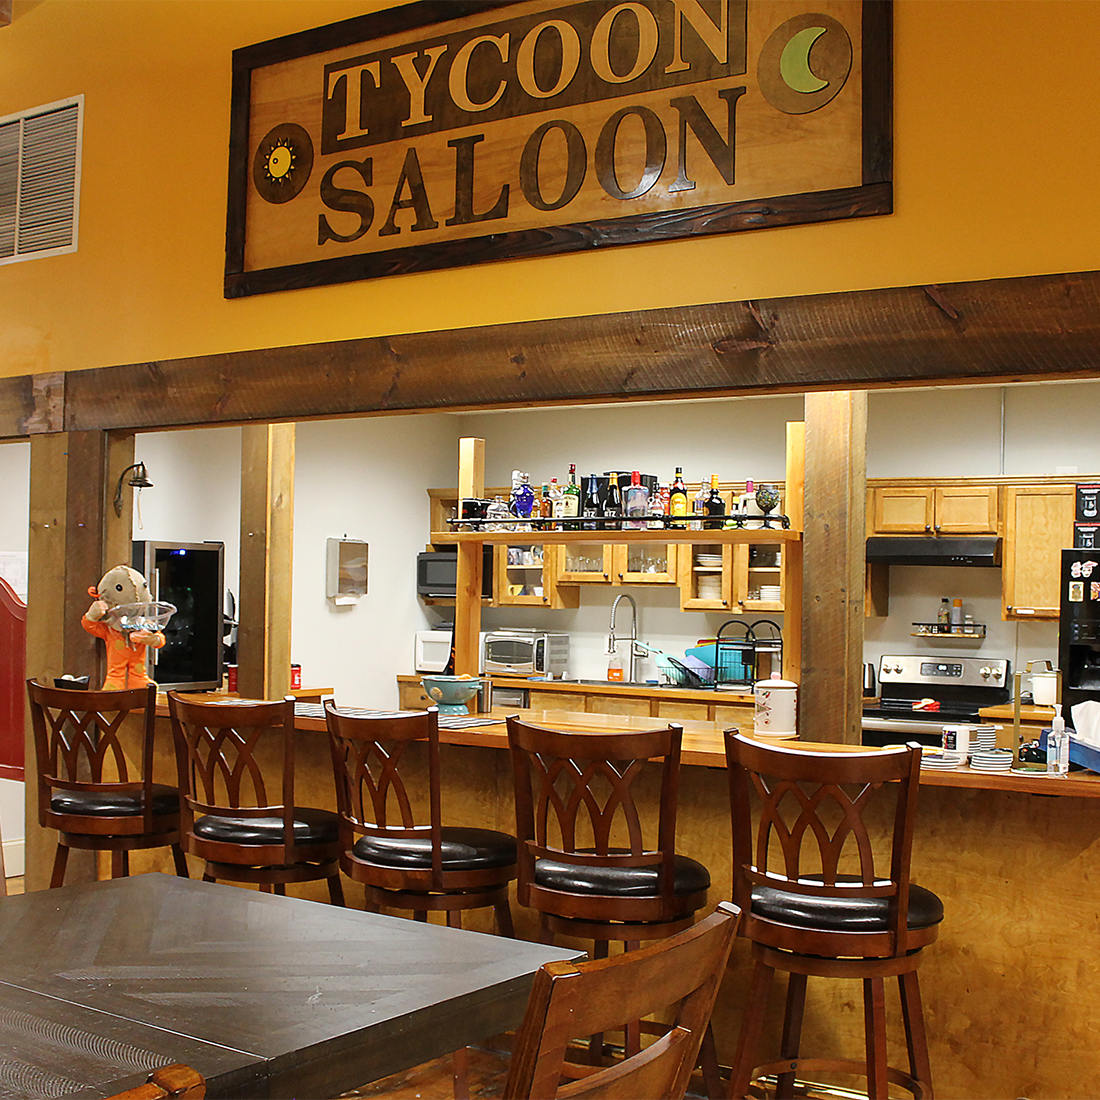 The tycoon saloon